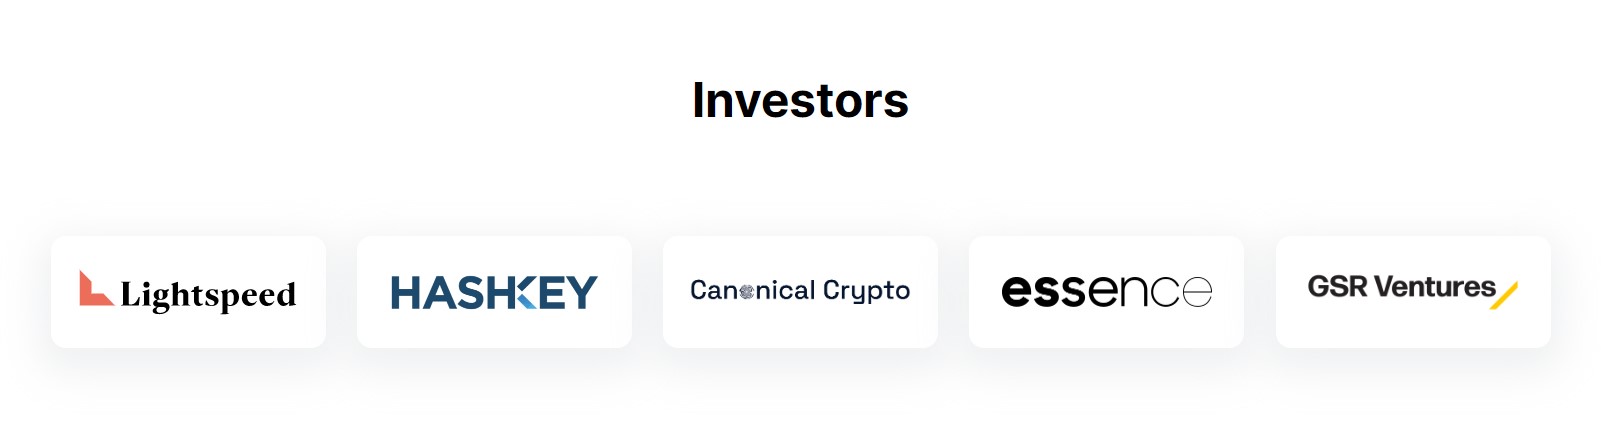 Sentio Investors